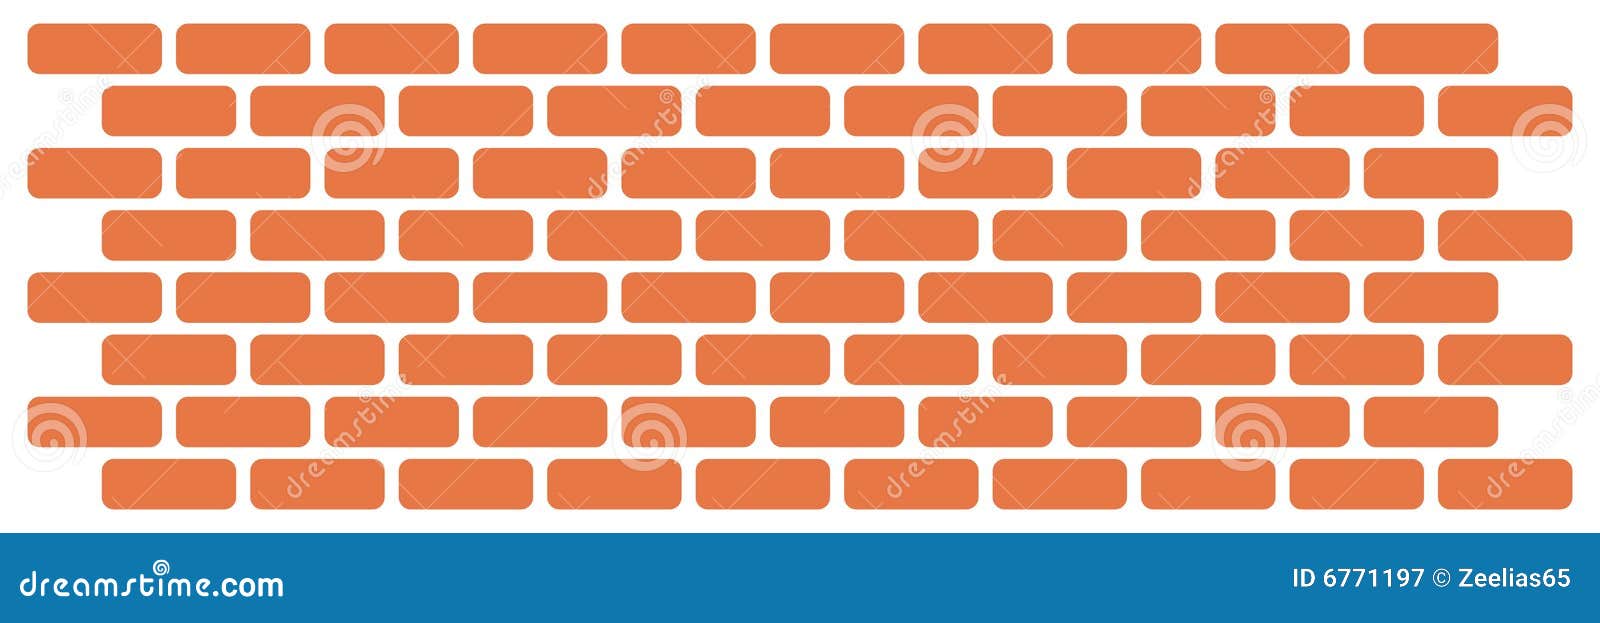 wall of bricks